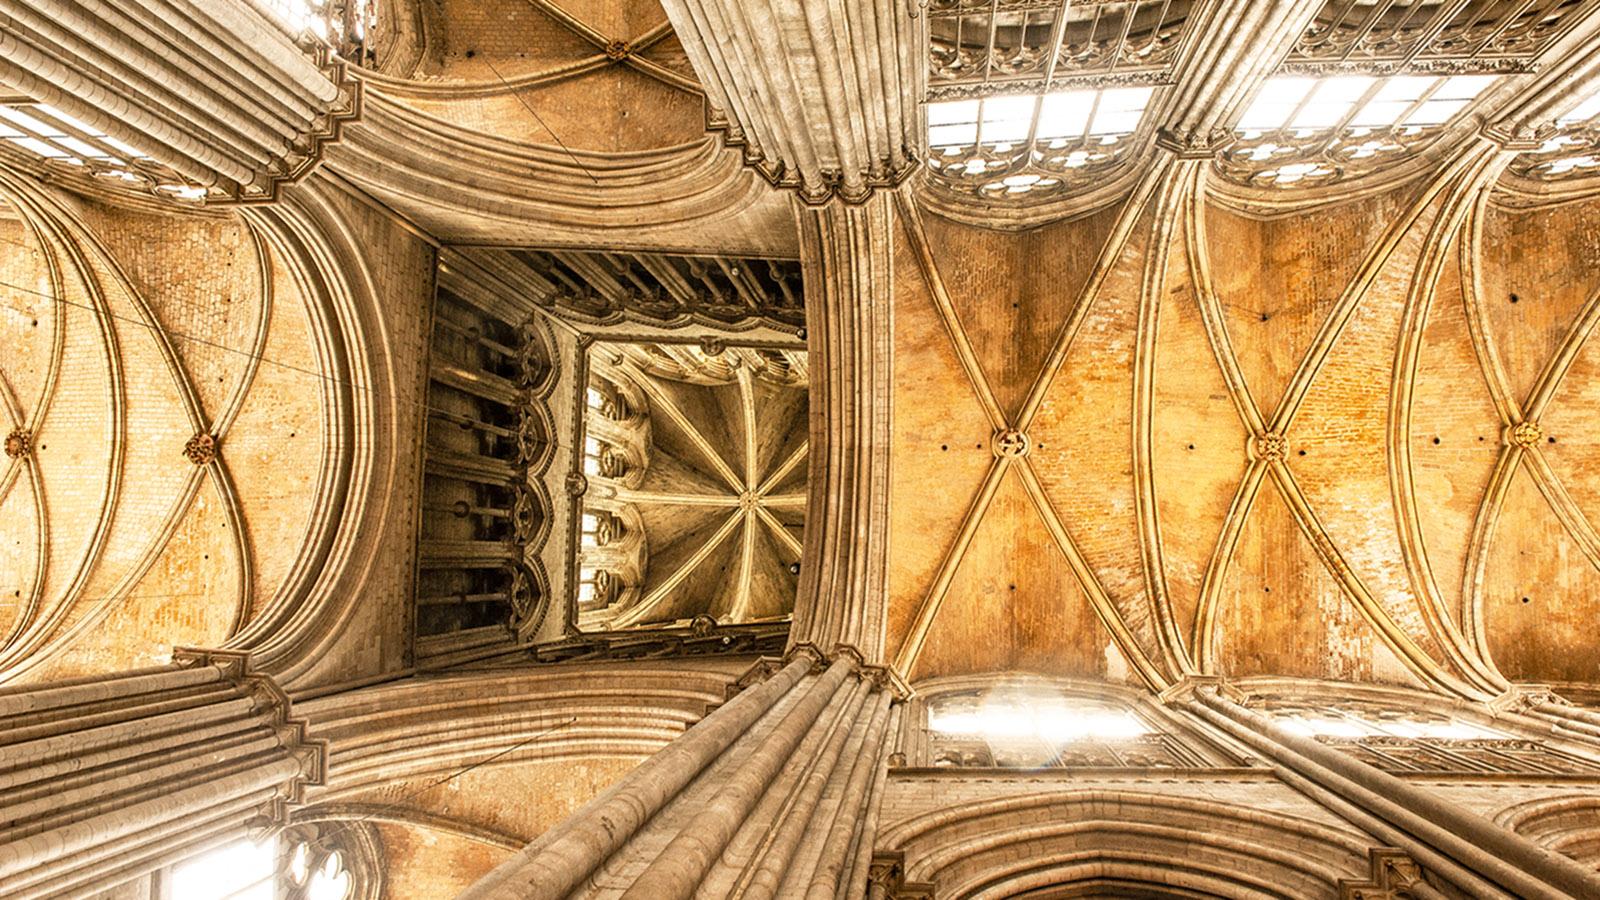 Beeindruckend: das Gewölbe der Kathedrale von Rouen. Foto: Hilke Maunder